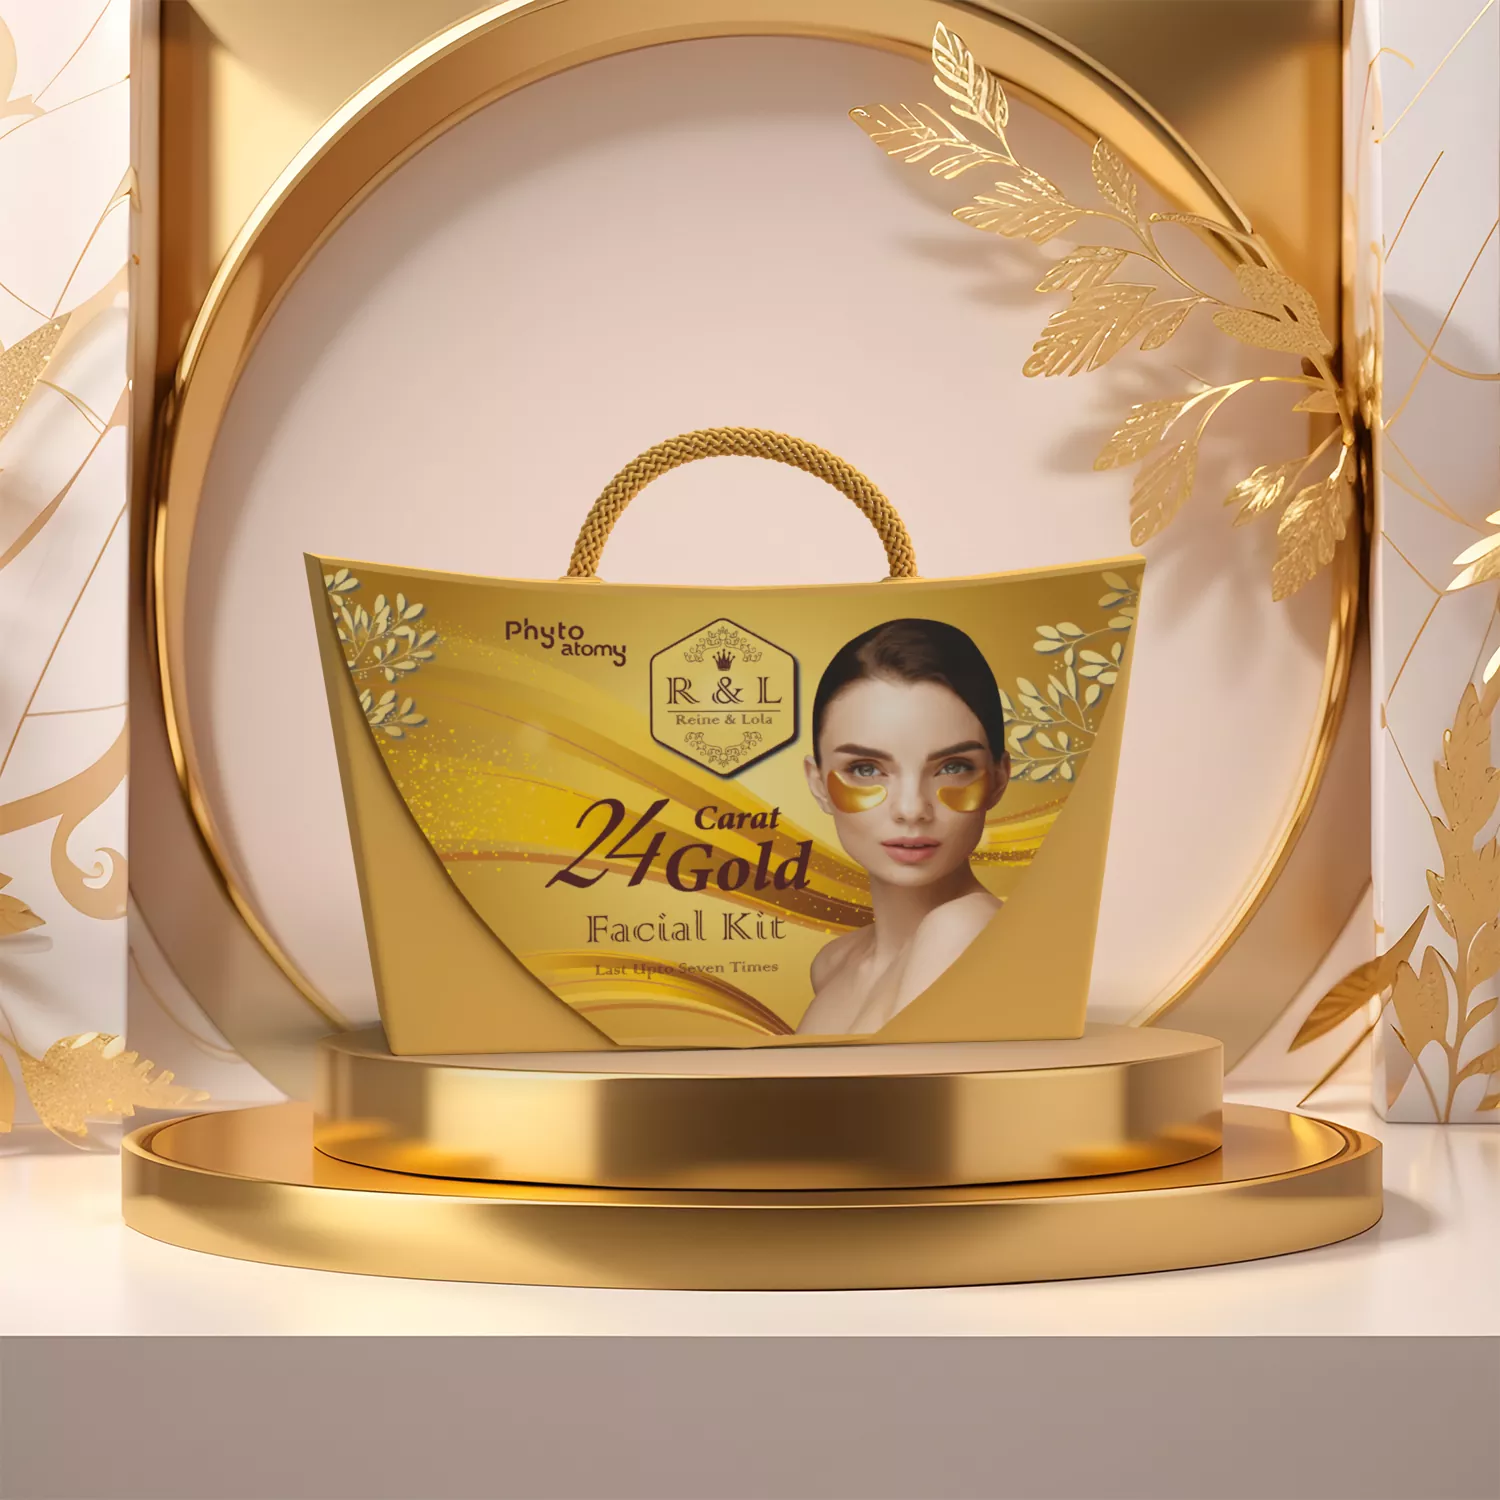 R & L 24 Carat Gold Facial Kit